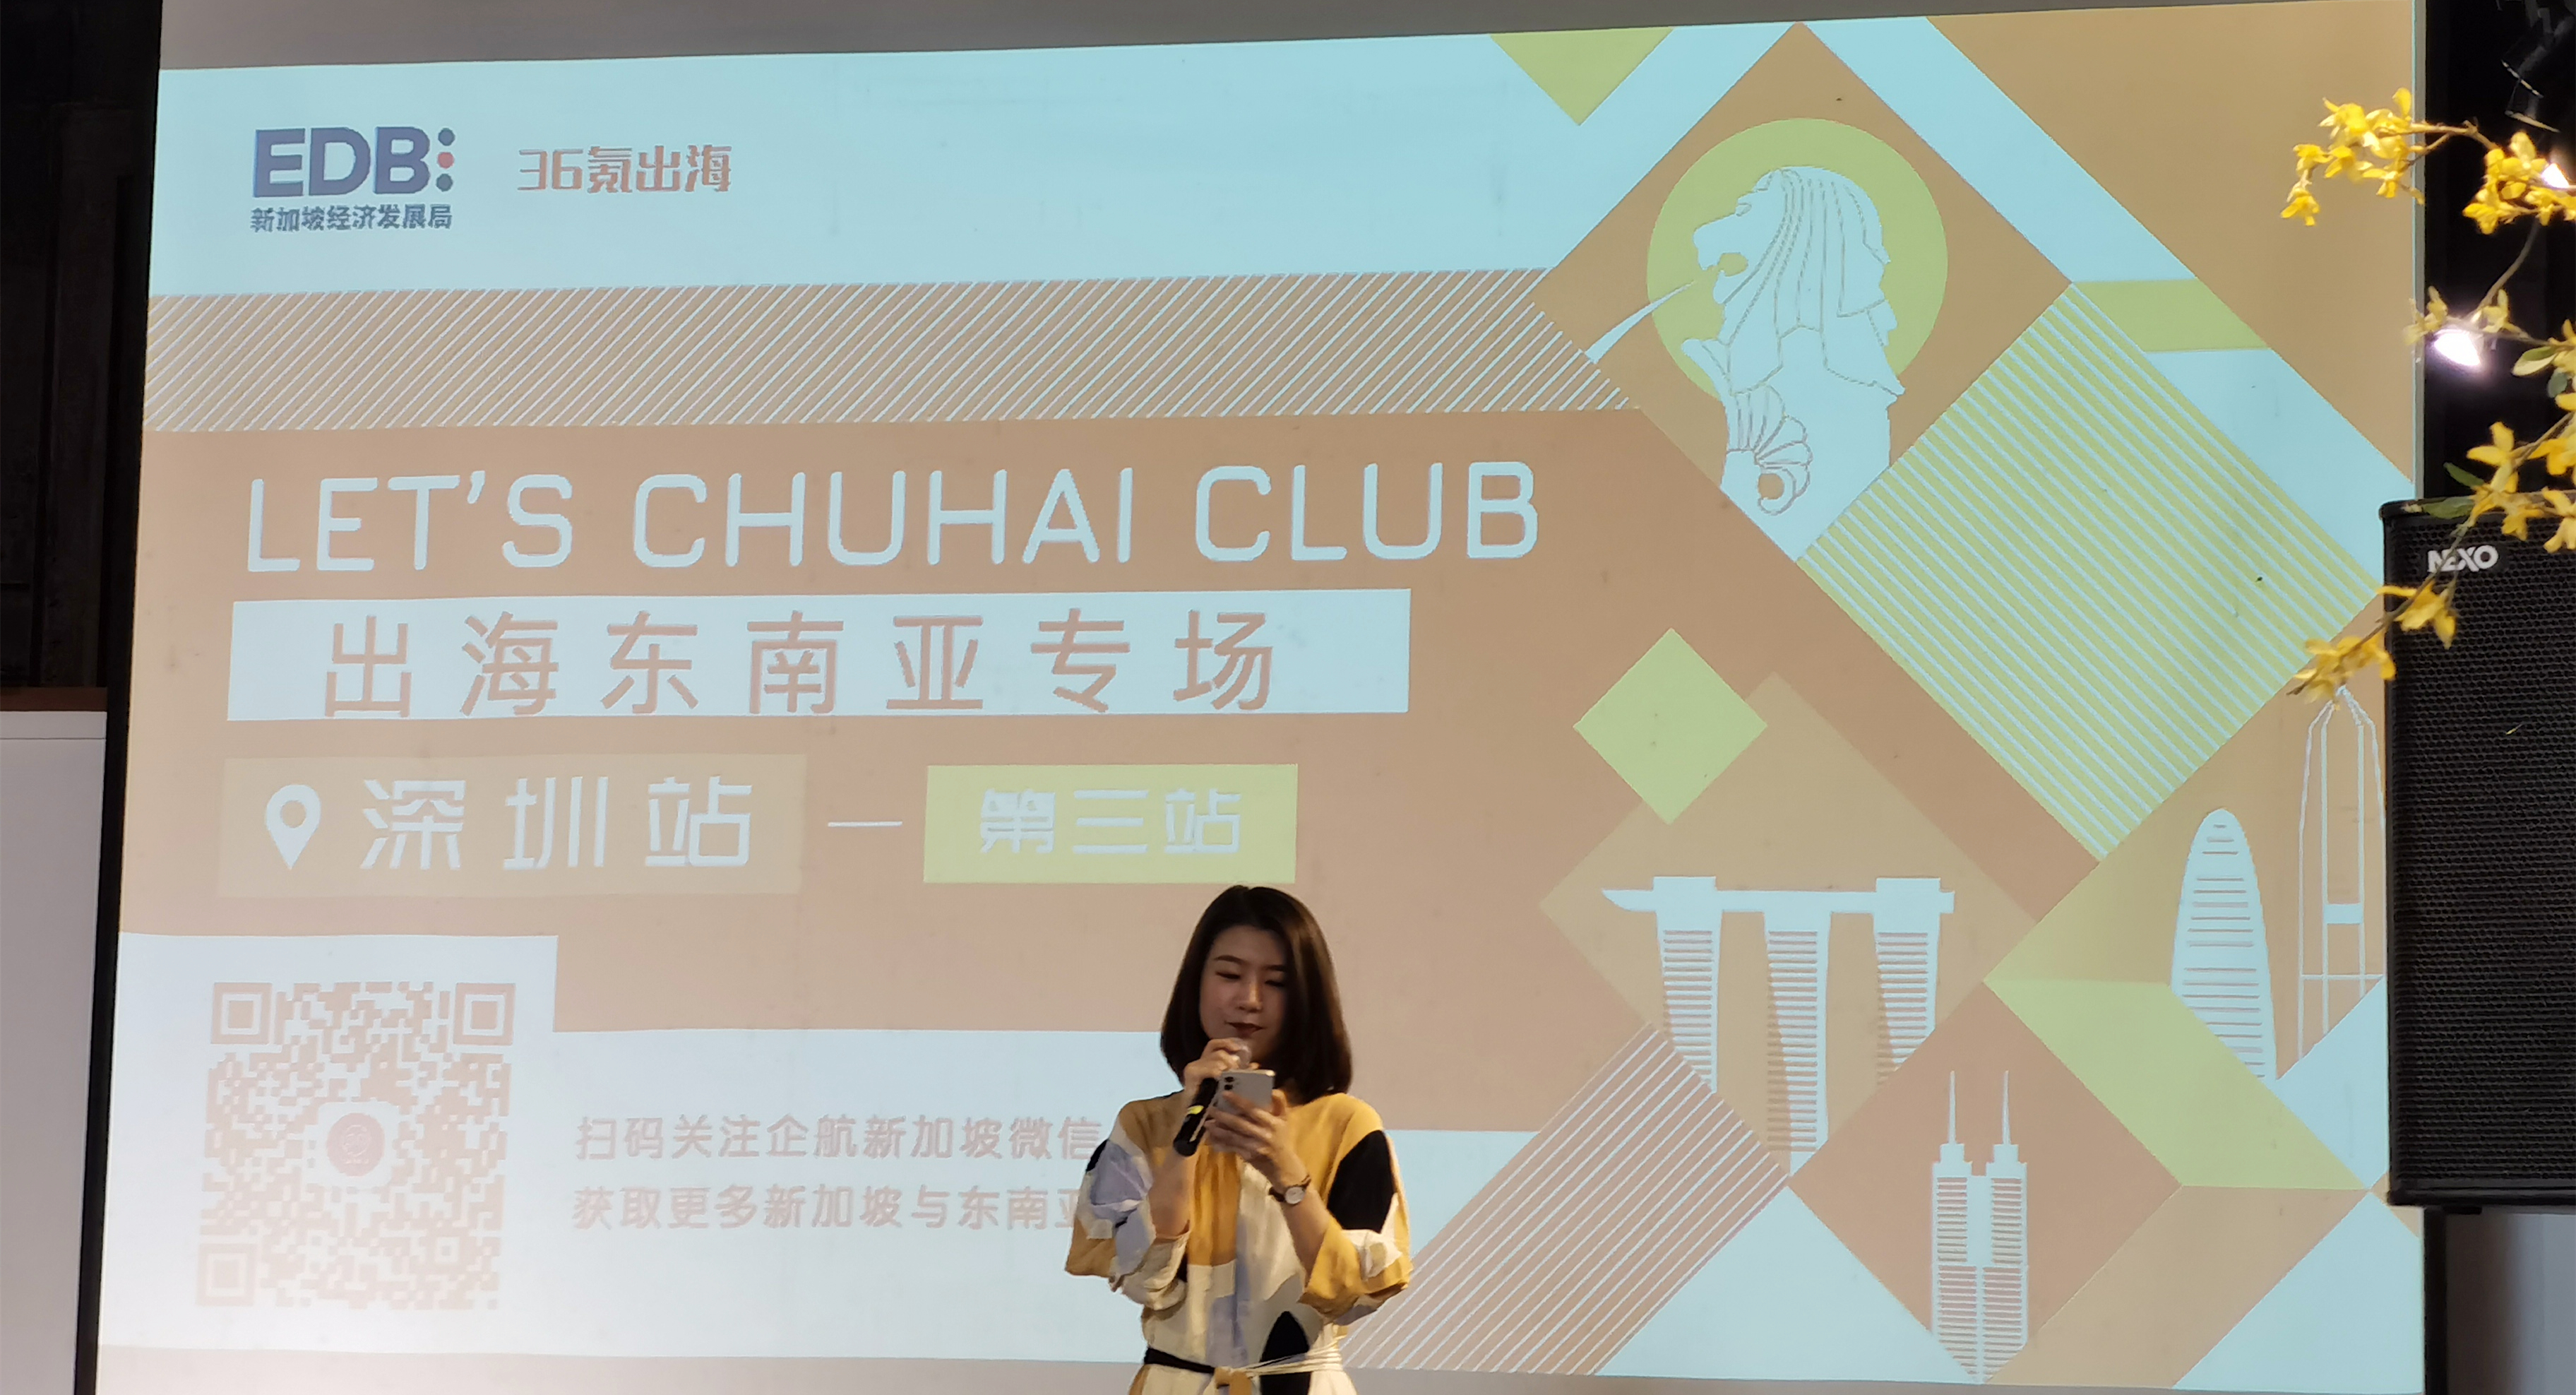 斑马ERP出席 | LET'S CHUHAI CLUB出海东南亚系列沙龙第三场